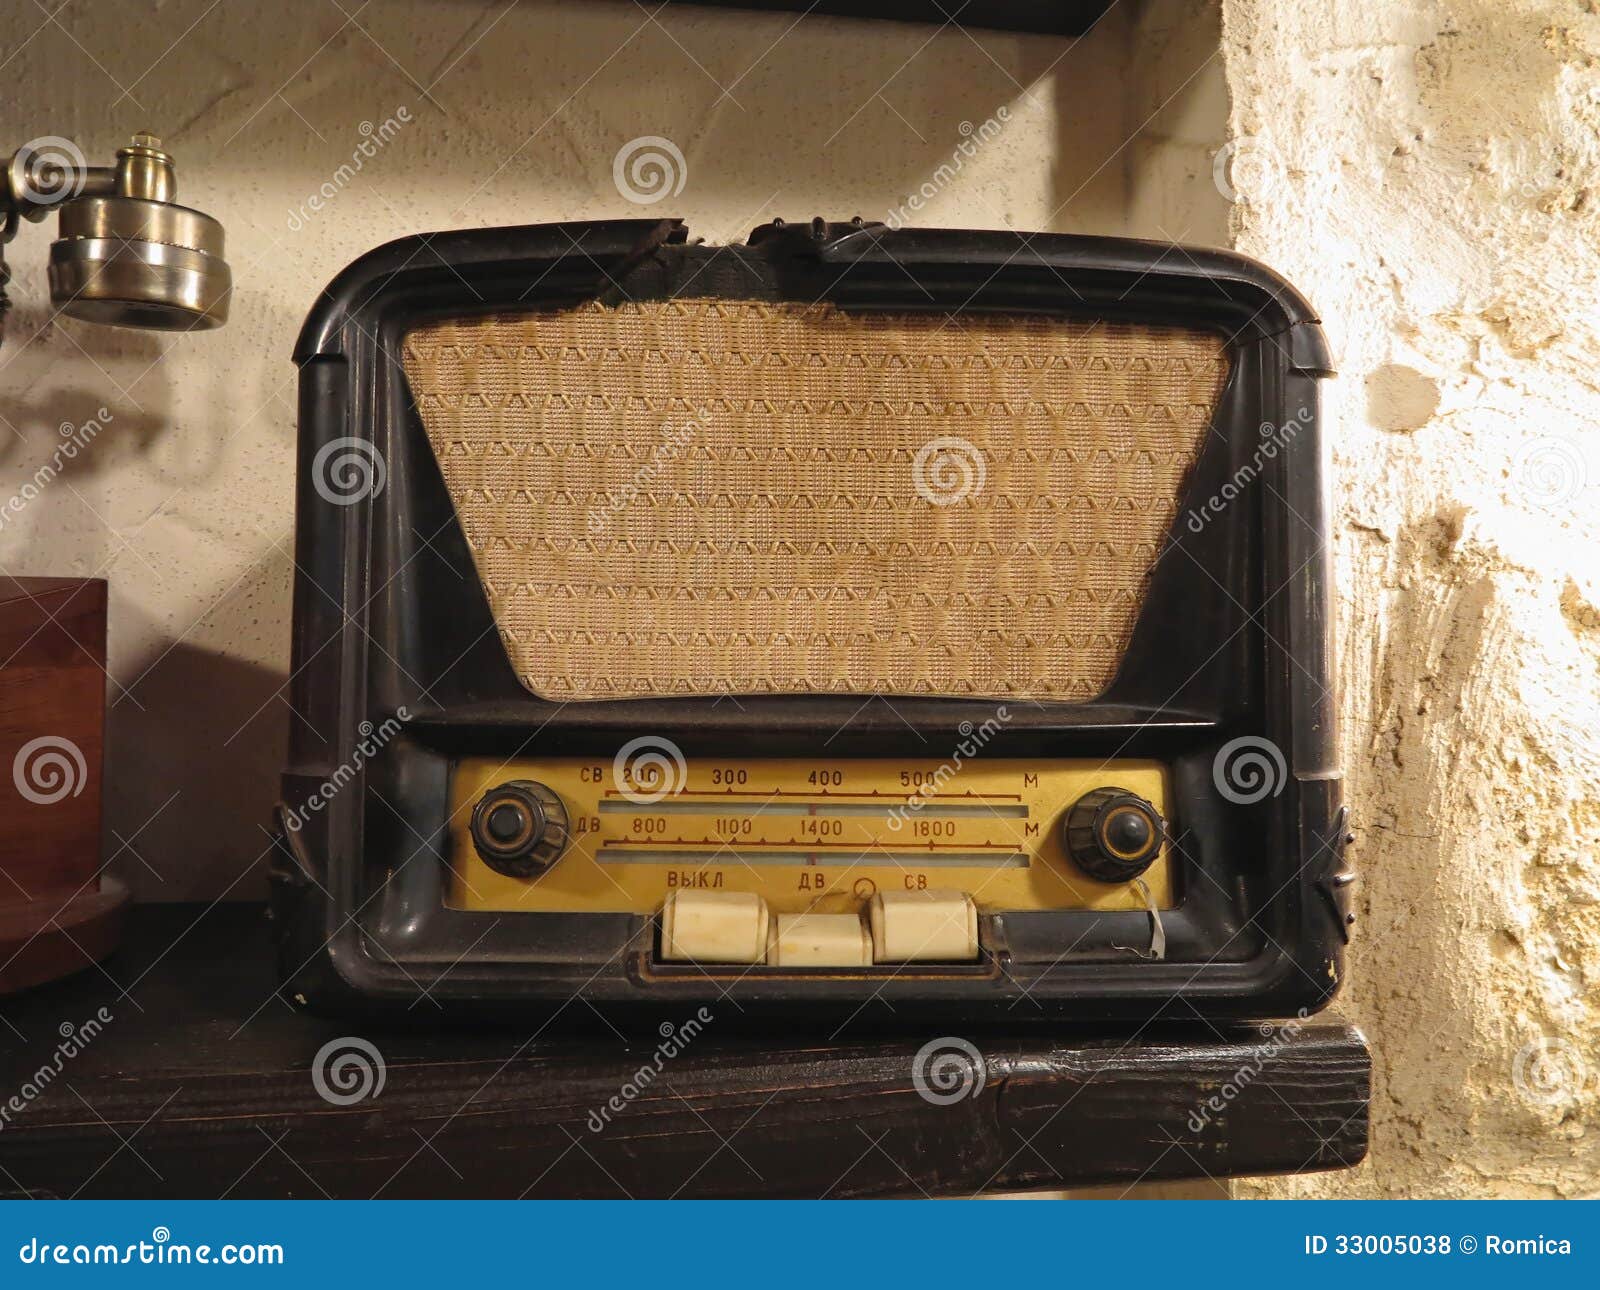 vintage brown old radio receiver